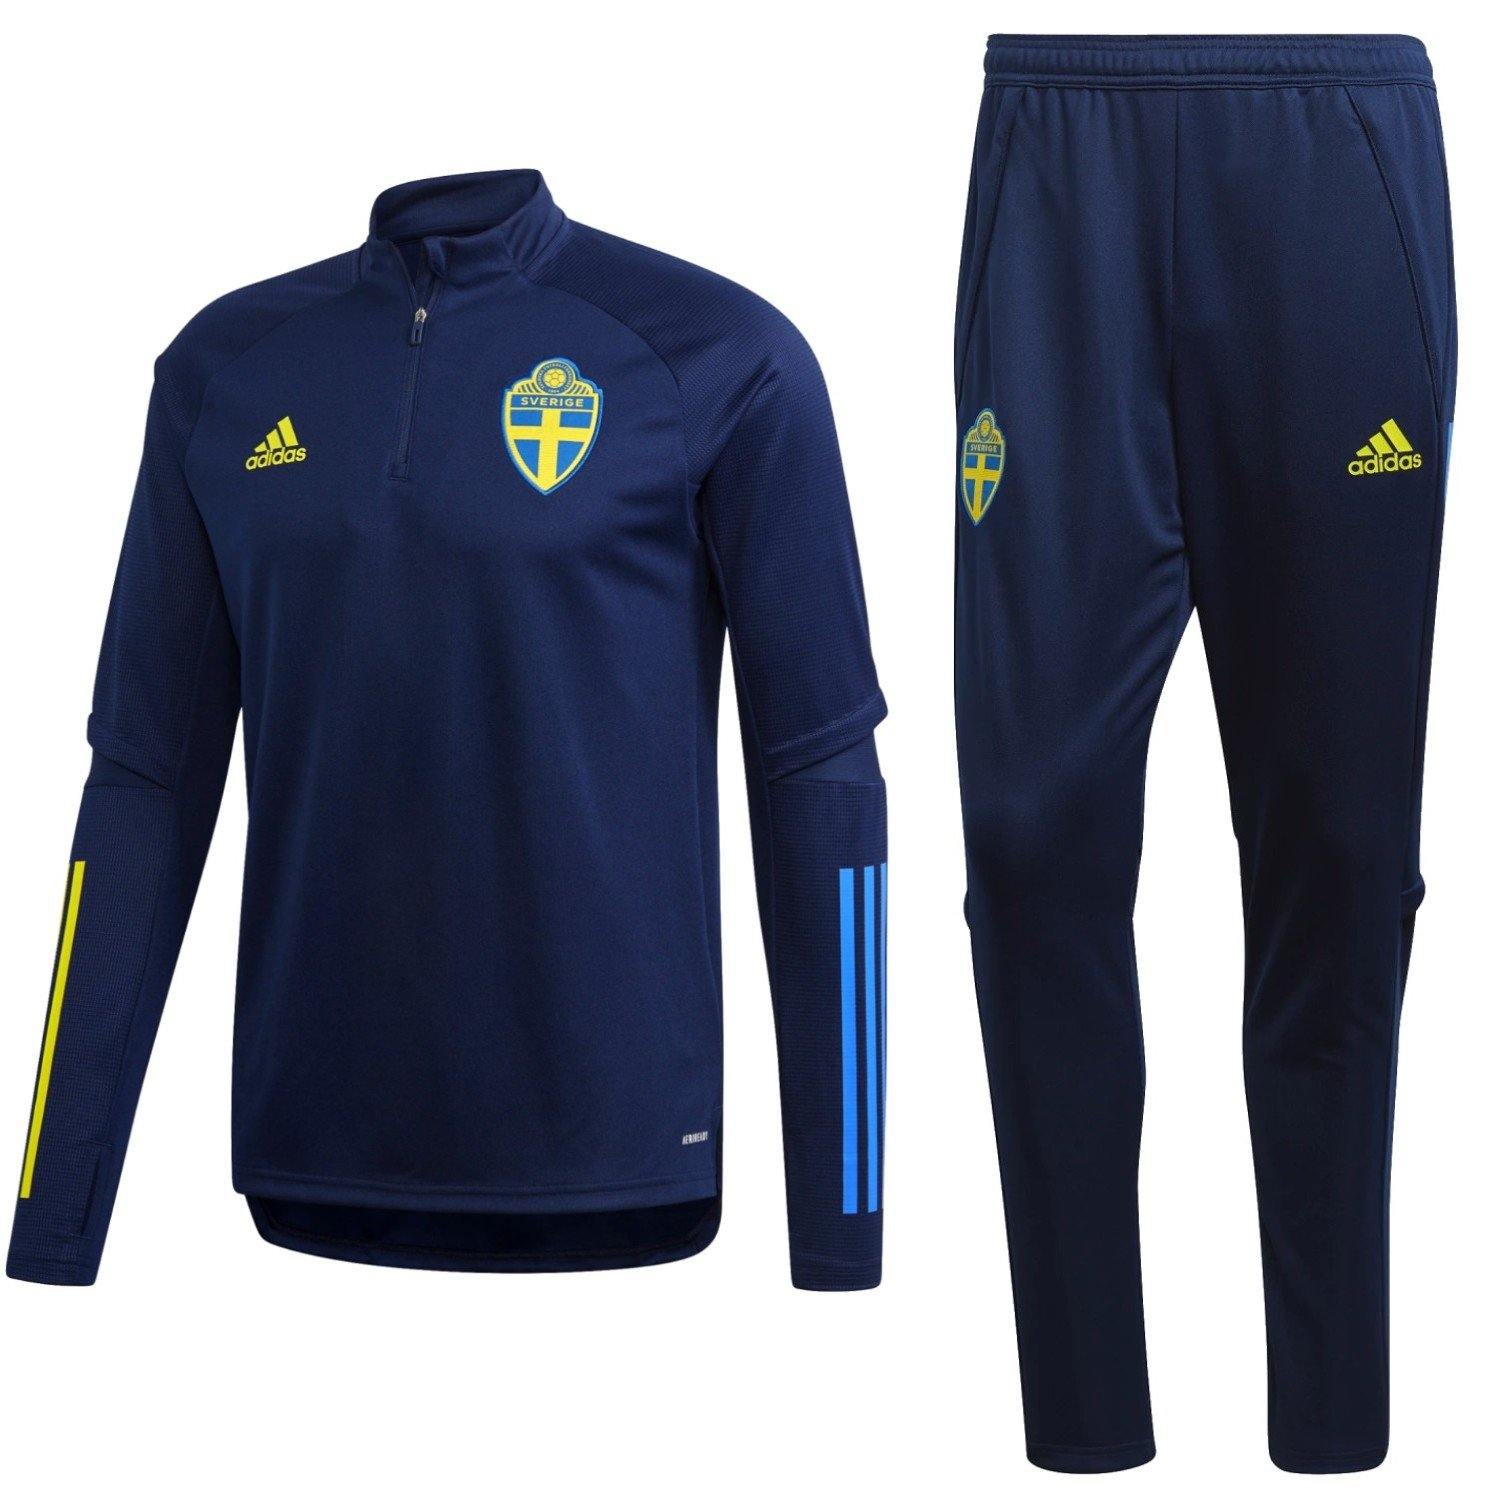 Sweden Football Shirt Soccer Jersey SVERIGE Adidas Size Small Men